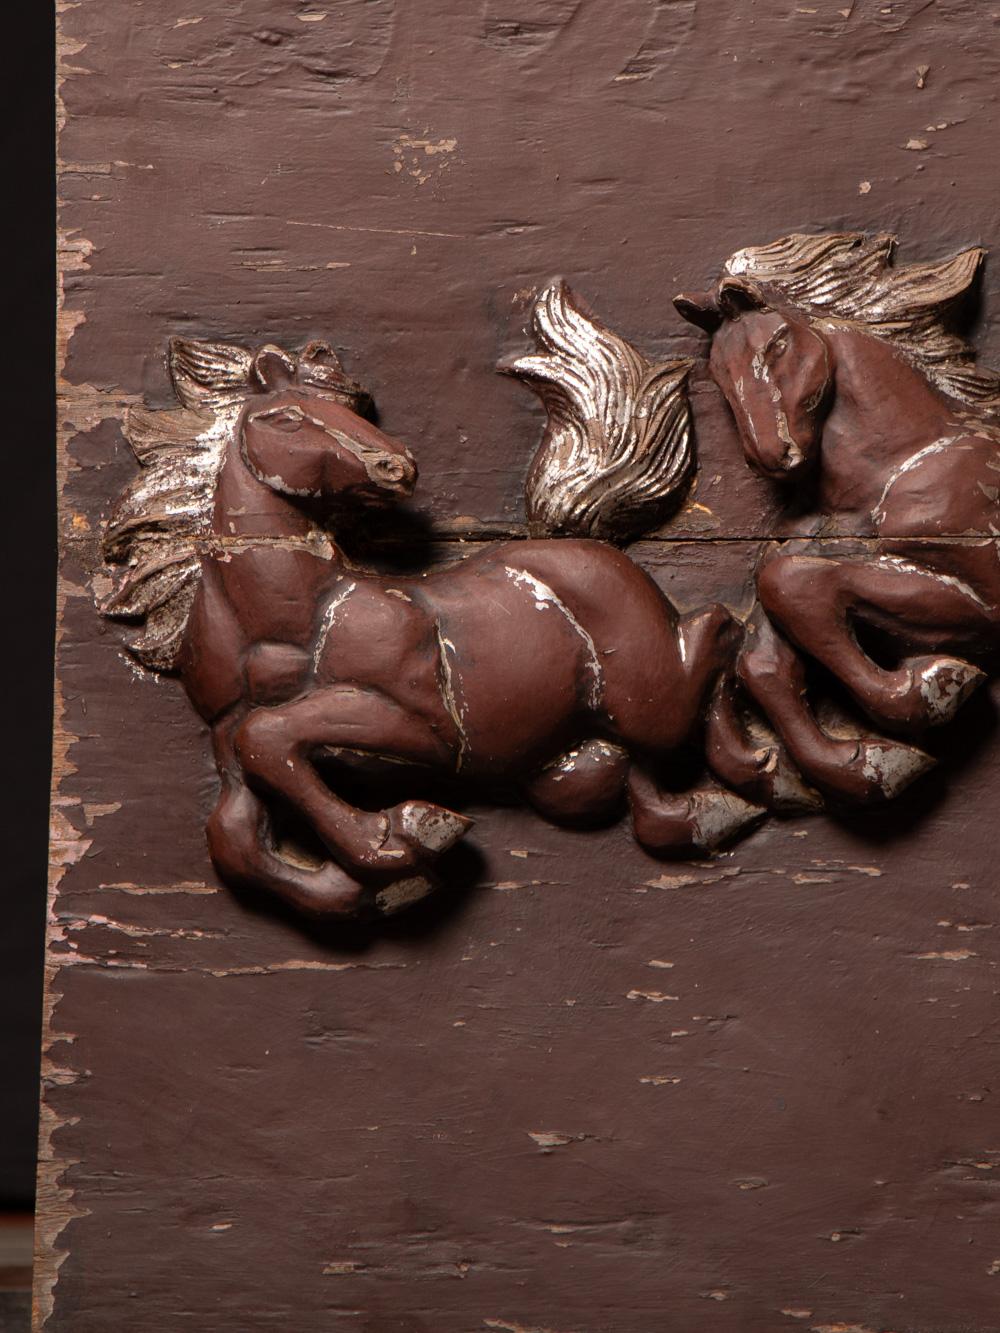 Diese antike Holztafel mit Pferden im Feng Shui-Stil stammt aus Burma und ist aus dem späten 19. / frühen 20. Jahrhundert. Die aus Holz gefertigten Pferde sind kraftvolle Feng Shui-Symbole für Stärke, Autorität und Energie und tragen das reiche